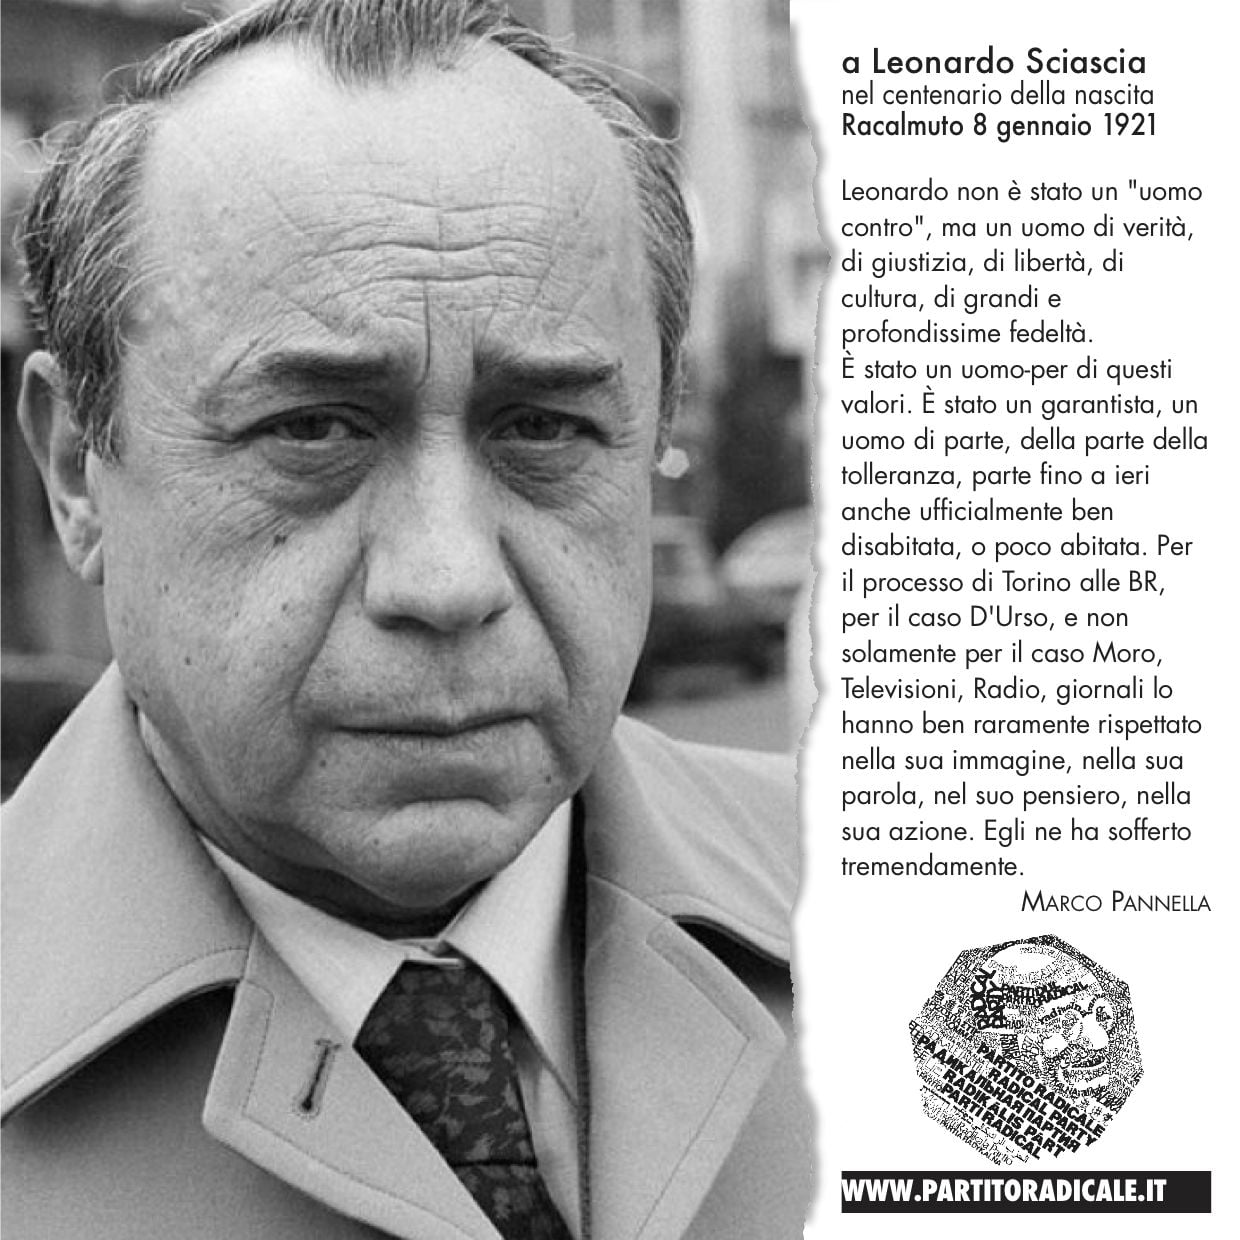 Samonà, Leonardo Sciascia: un grande siciliano, un intellettuale libero mai  piegato alle logiche del potere - imgpress